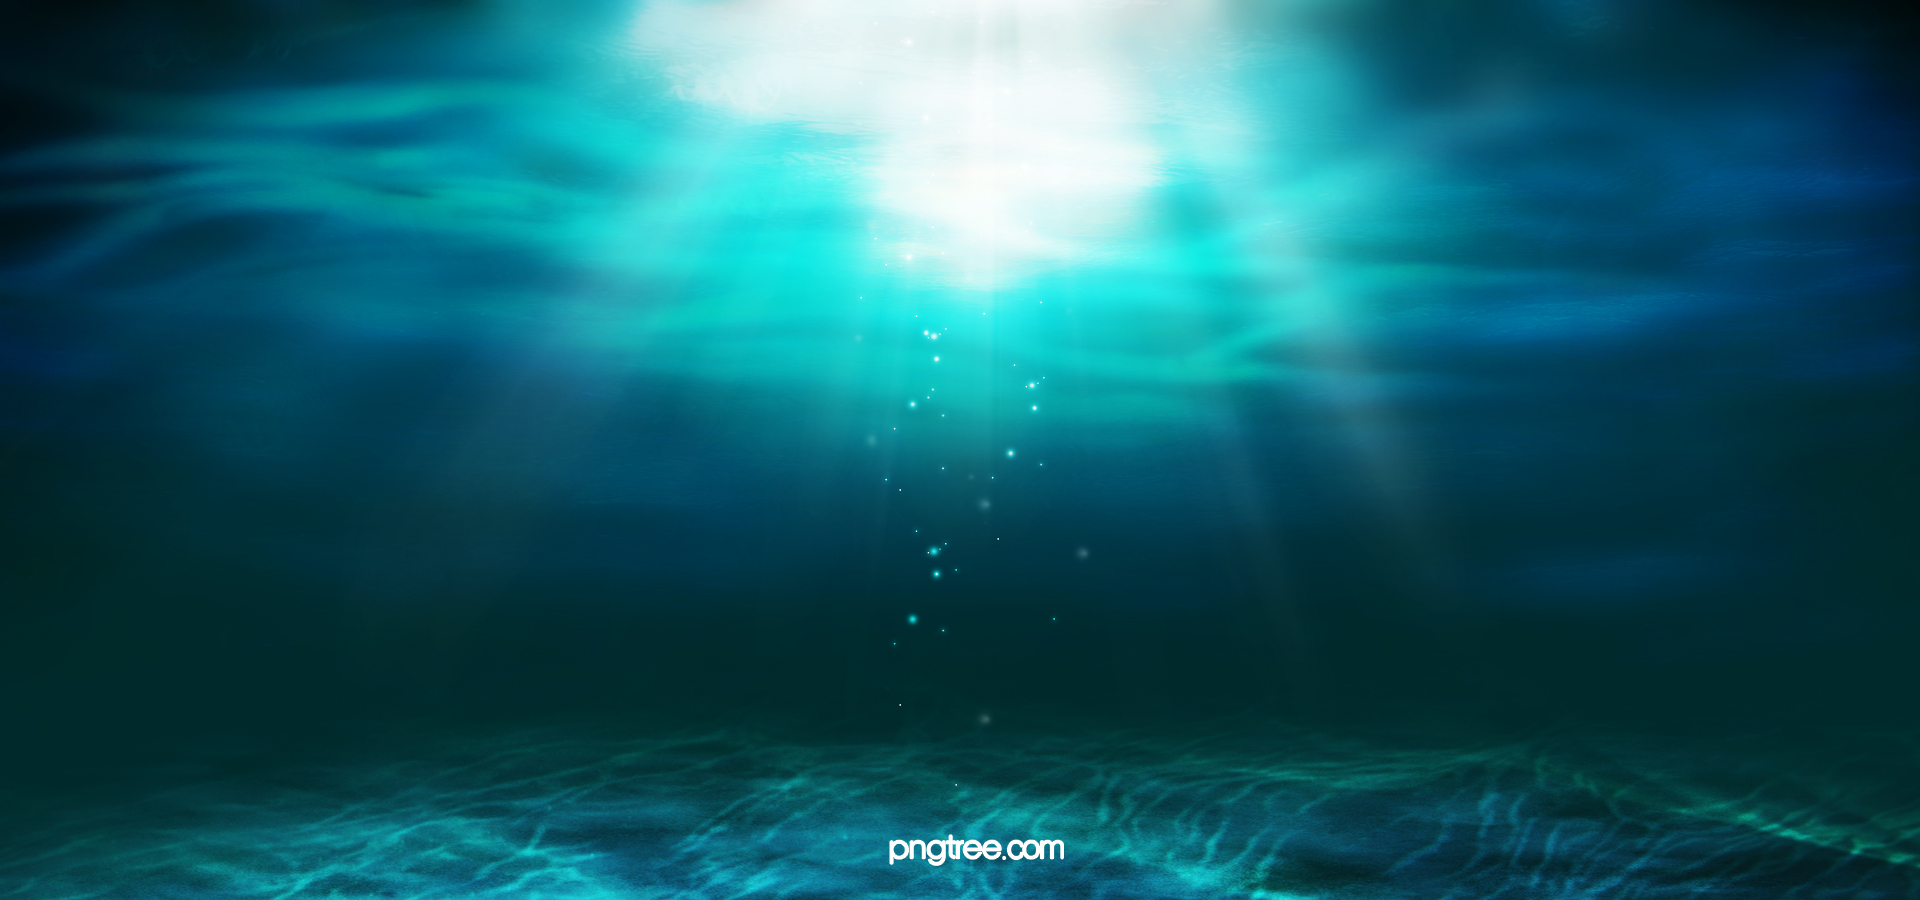 阳光透过湛蓝透明的海水神秘的海底世界海面波浪